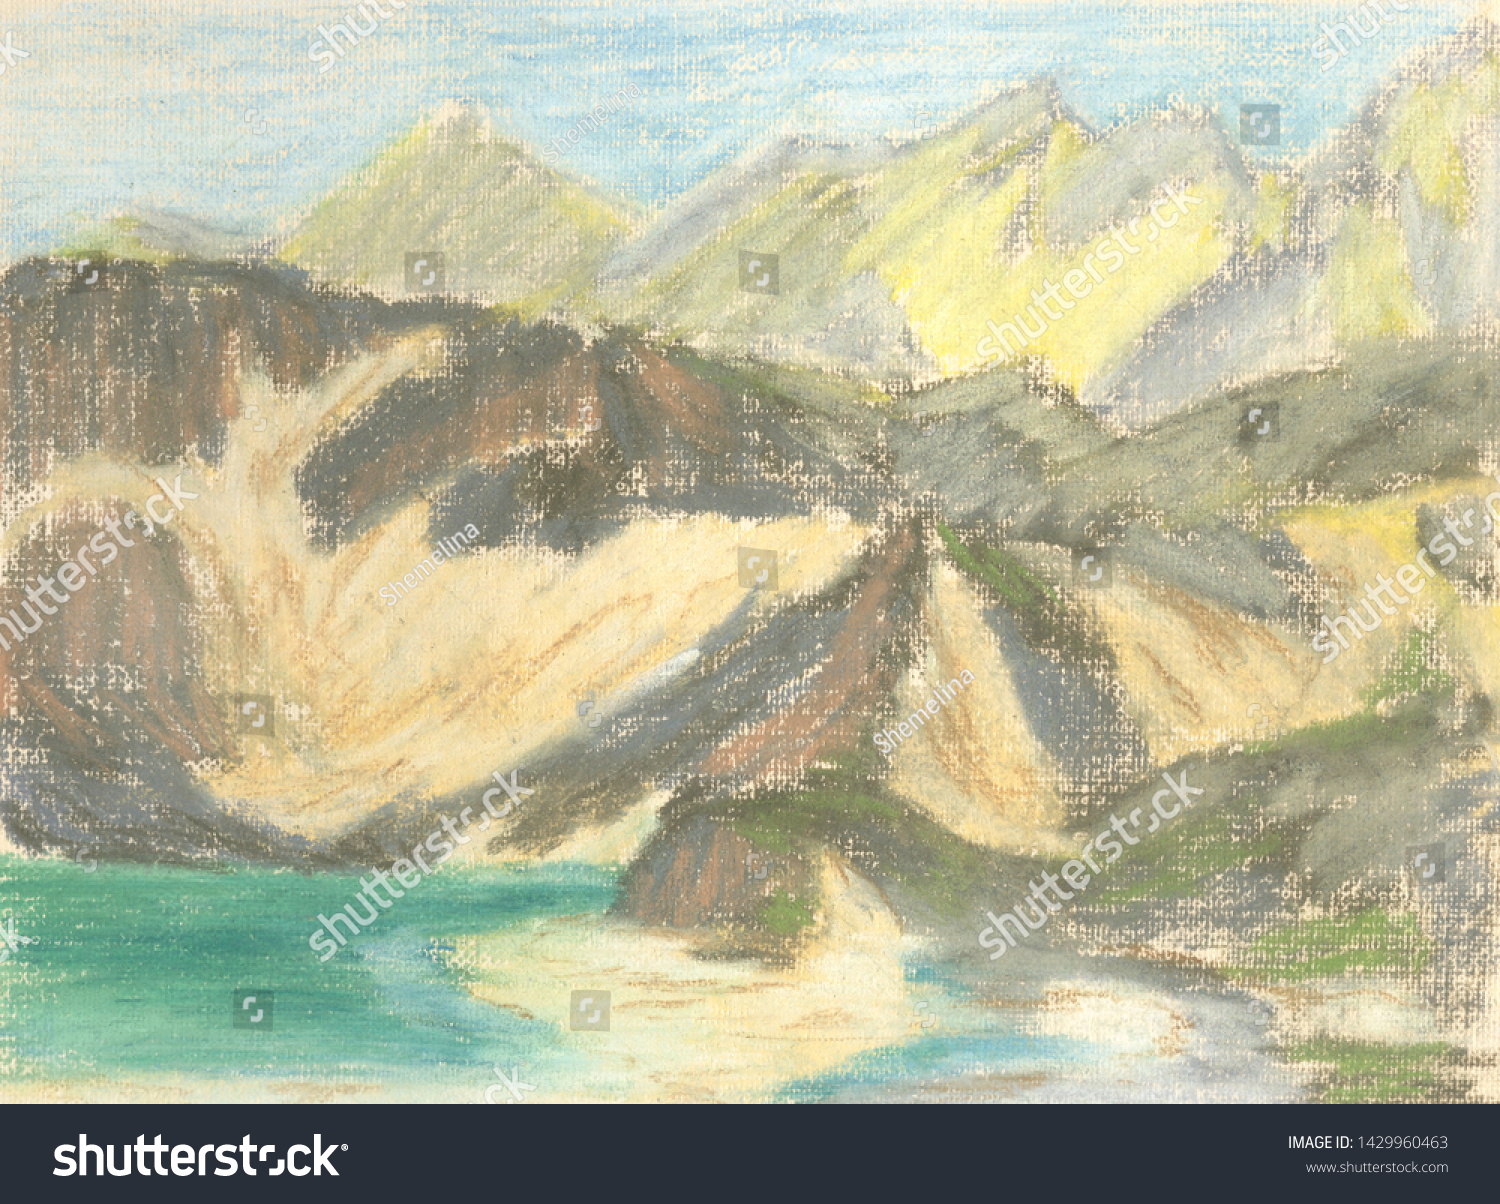 Mountain Landscape Lake Mountains On Horizon Stock Illustration